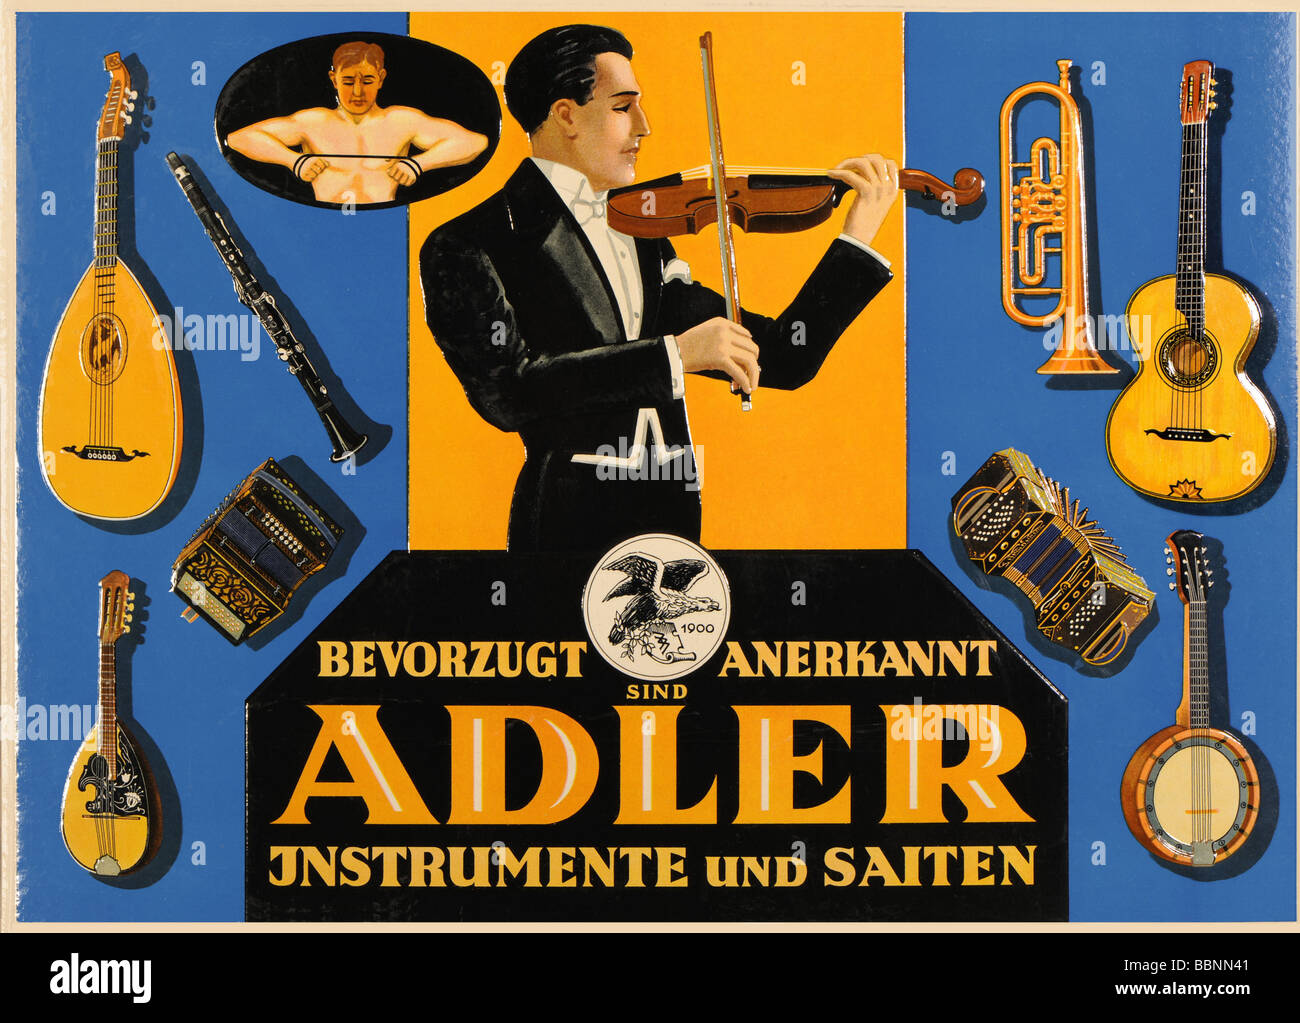 Publicidad, Adler instrumentos de música, Alemania, alrededor de 1929 Fotografía de -